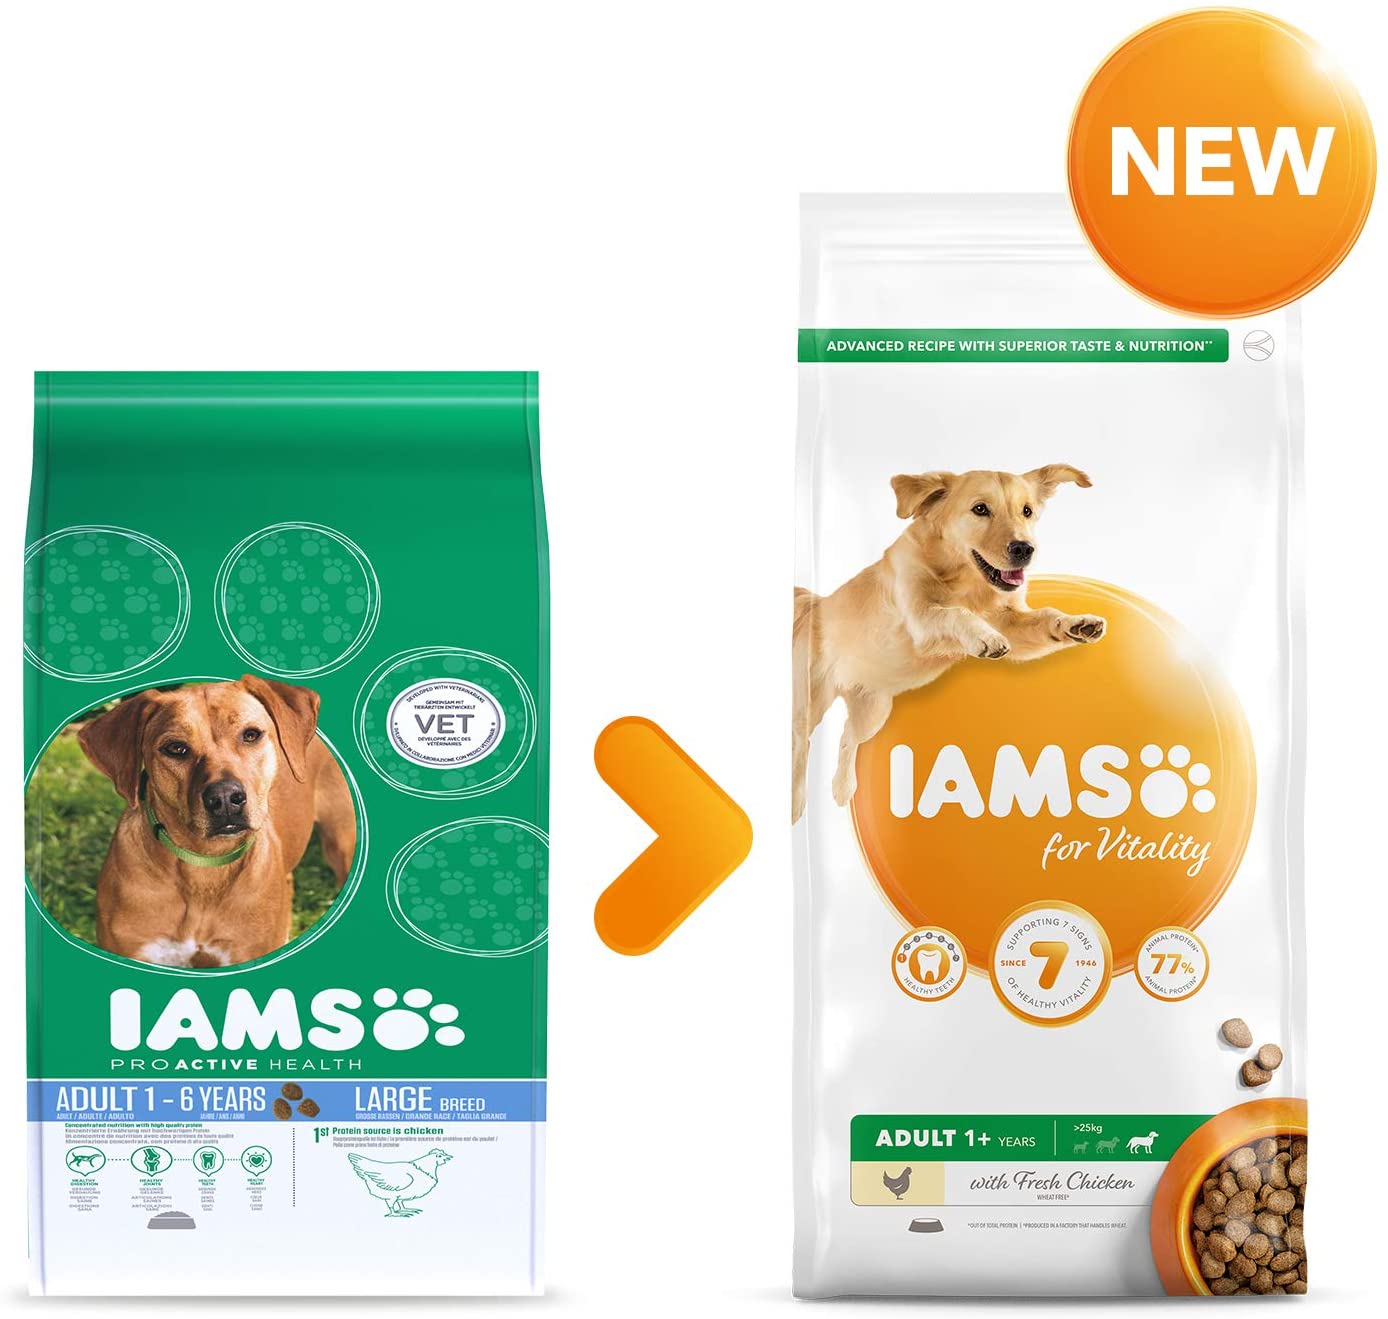  IAMS for Vitality Alimento para Perros Pequeños y Medianos Adultos con pollo fresco [12 kg] 